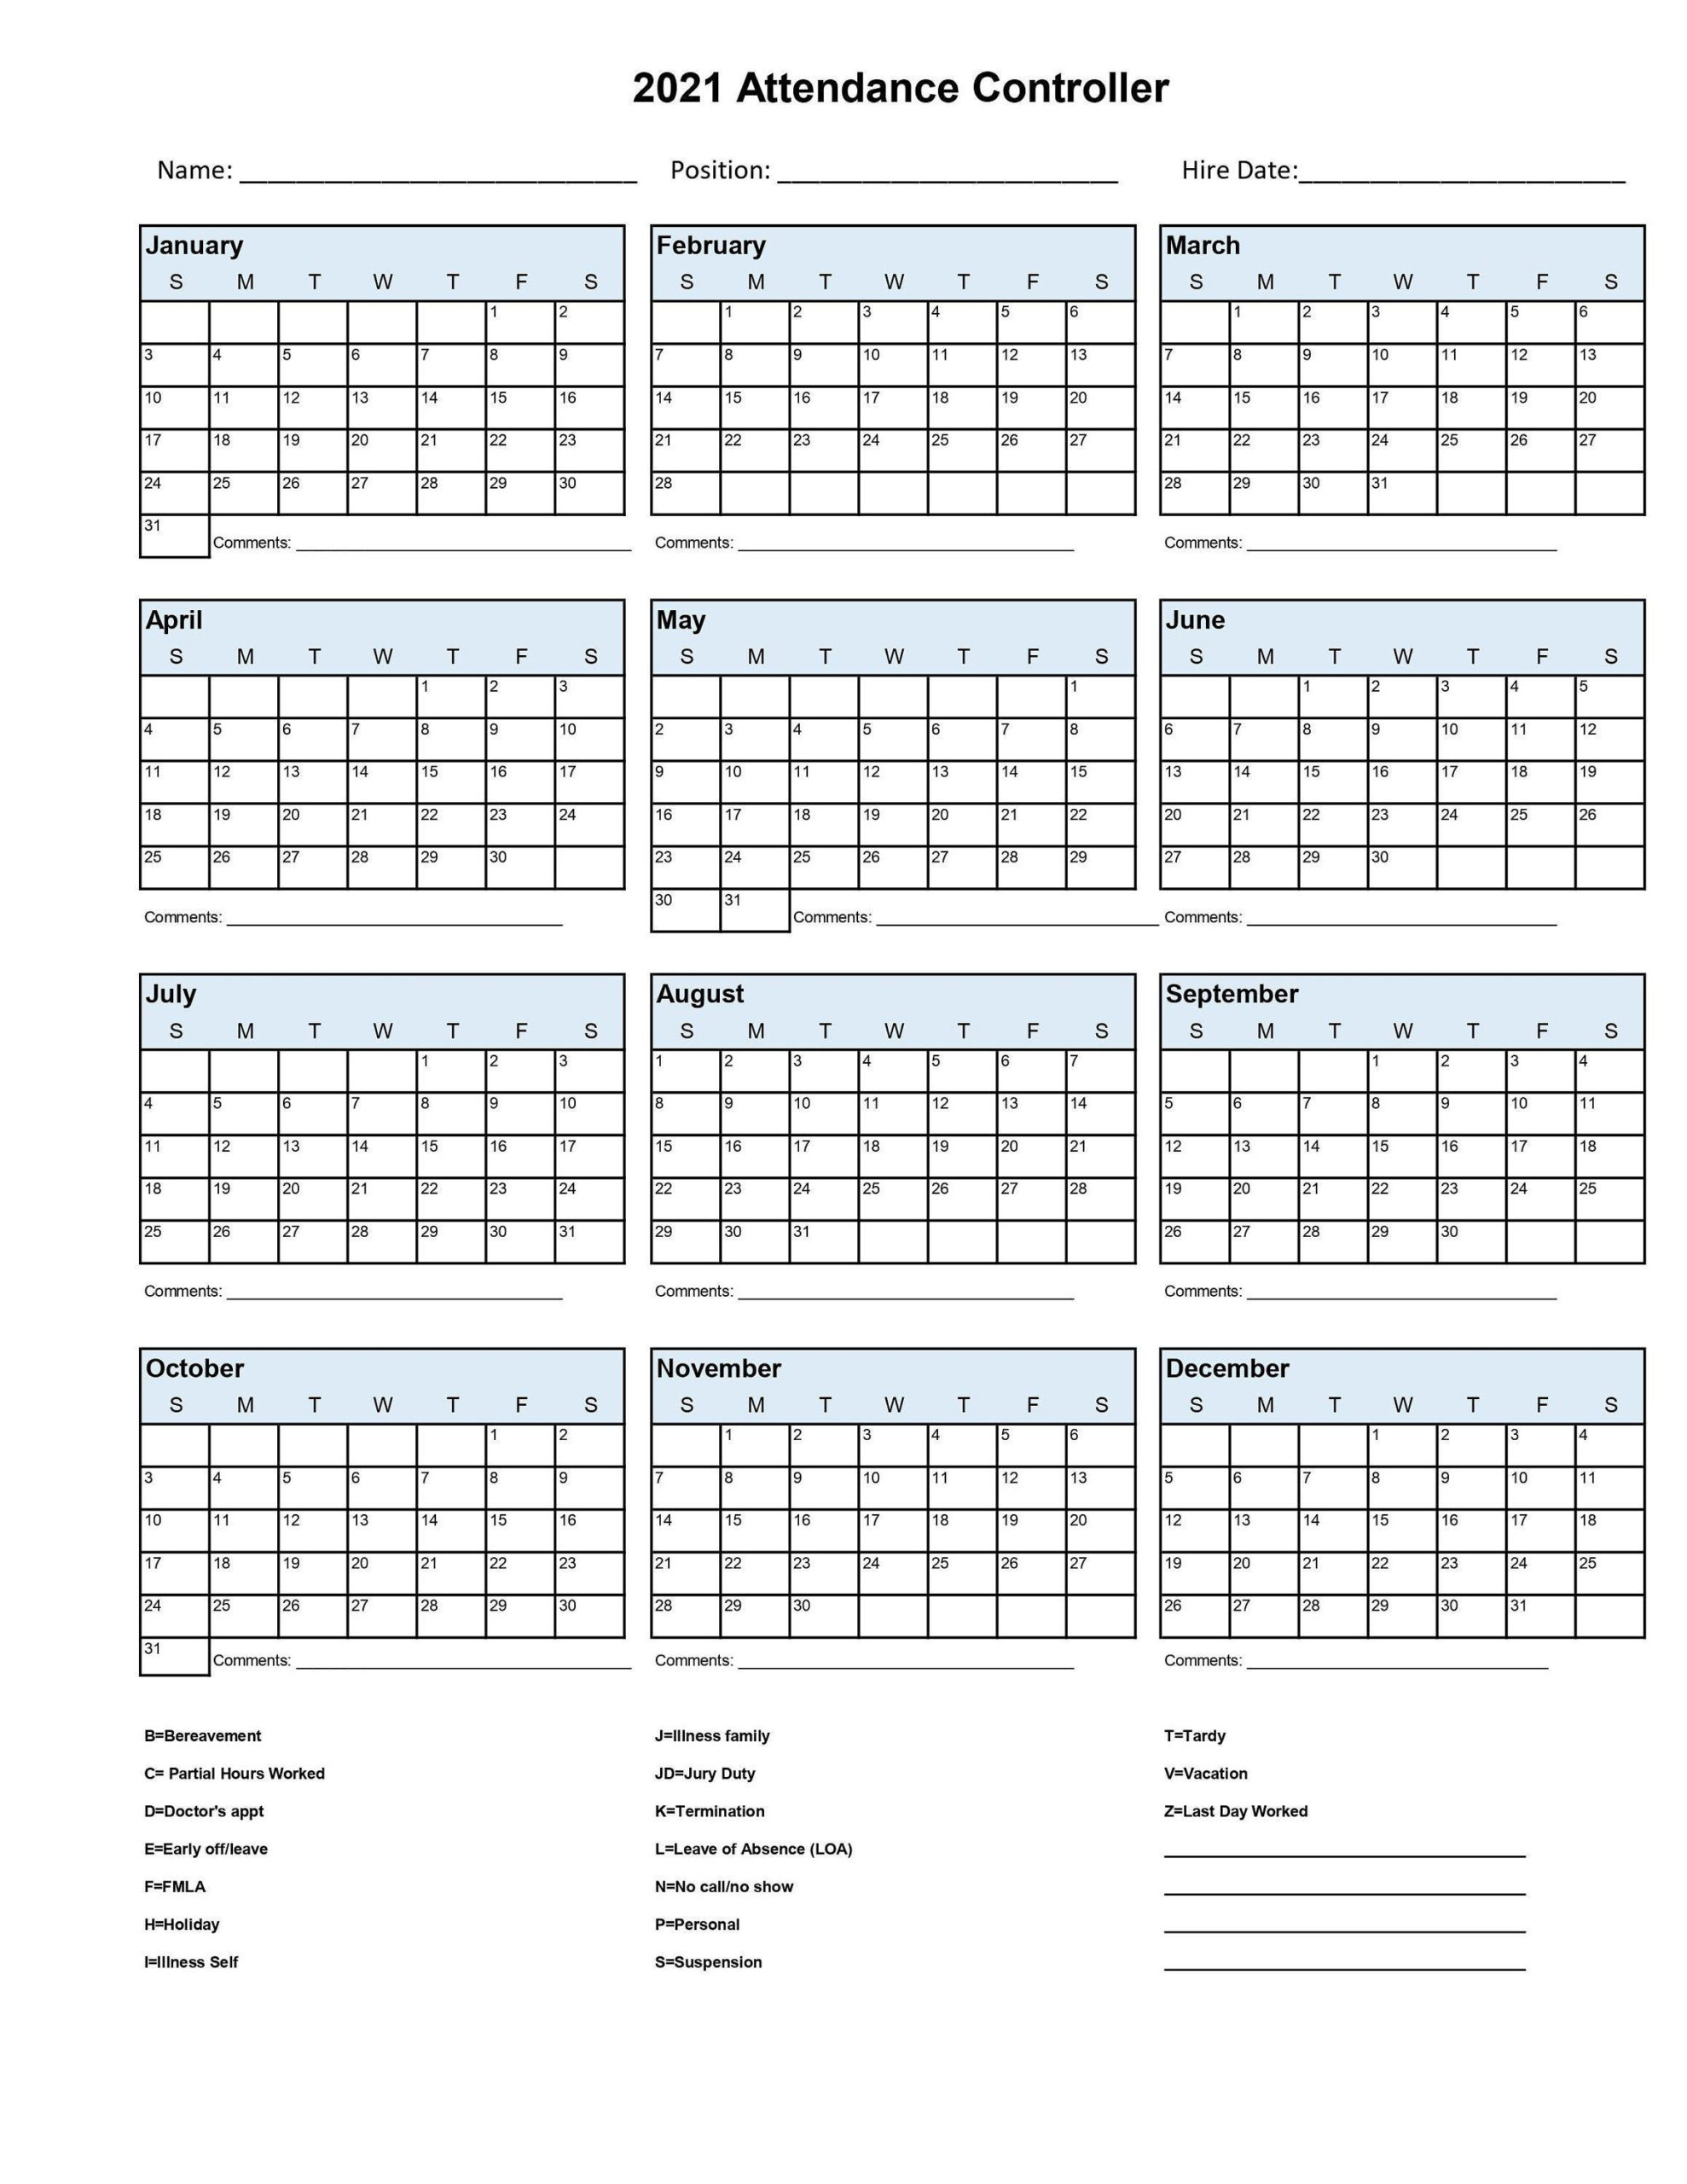 2021 Employee School Attendance Tracker Calendar Employee-Employee Vacaton Calendar 2021